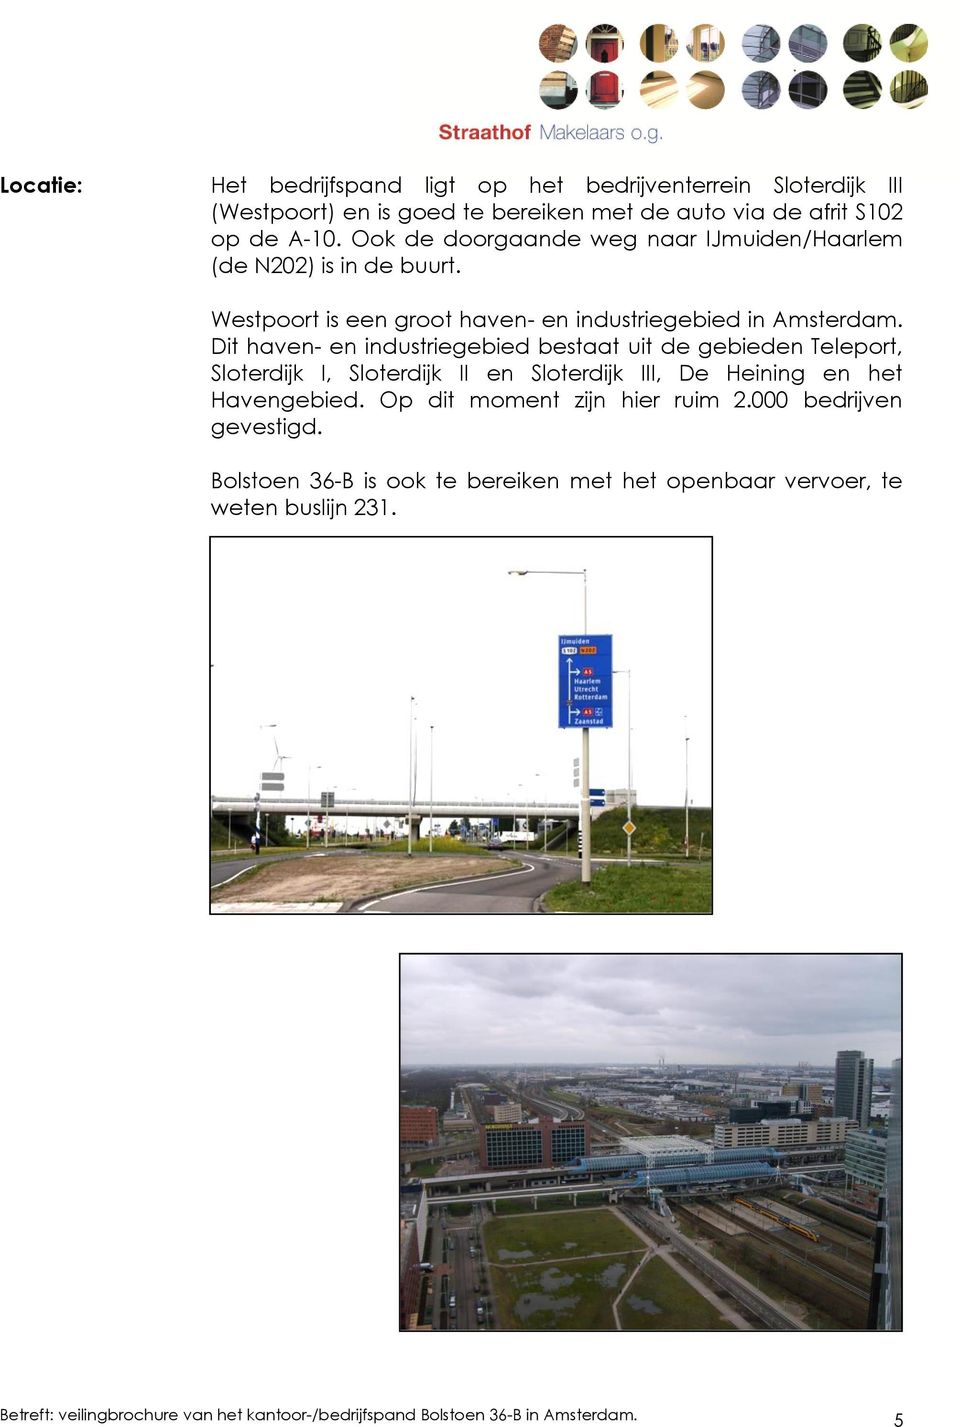 Dit haven- en industriegebied bestaat uit de gebieden Teleport, Sloterdijk I, Sloterdijk II en Sloterdijk III, De Heining en het Havengebied.